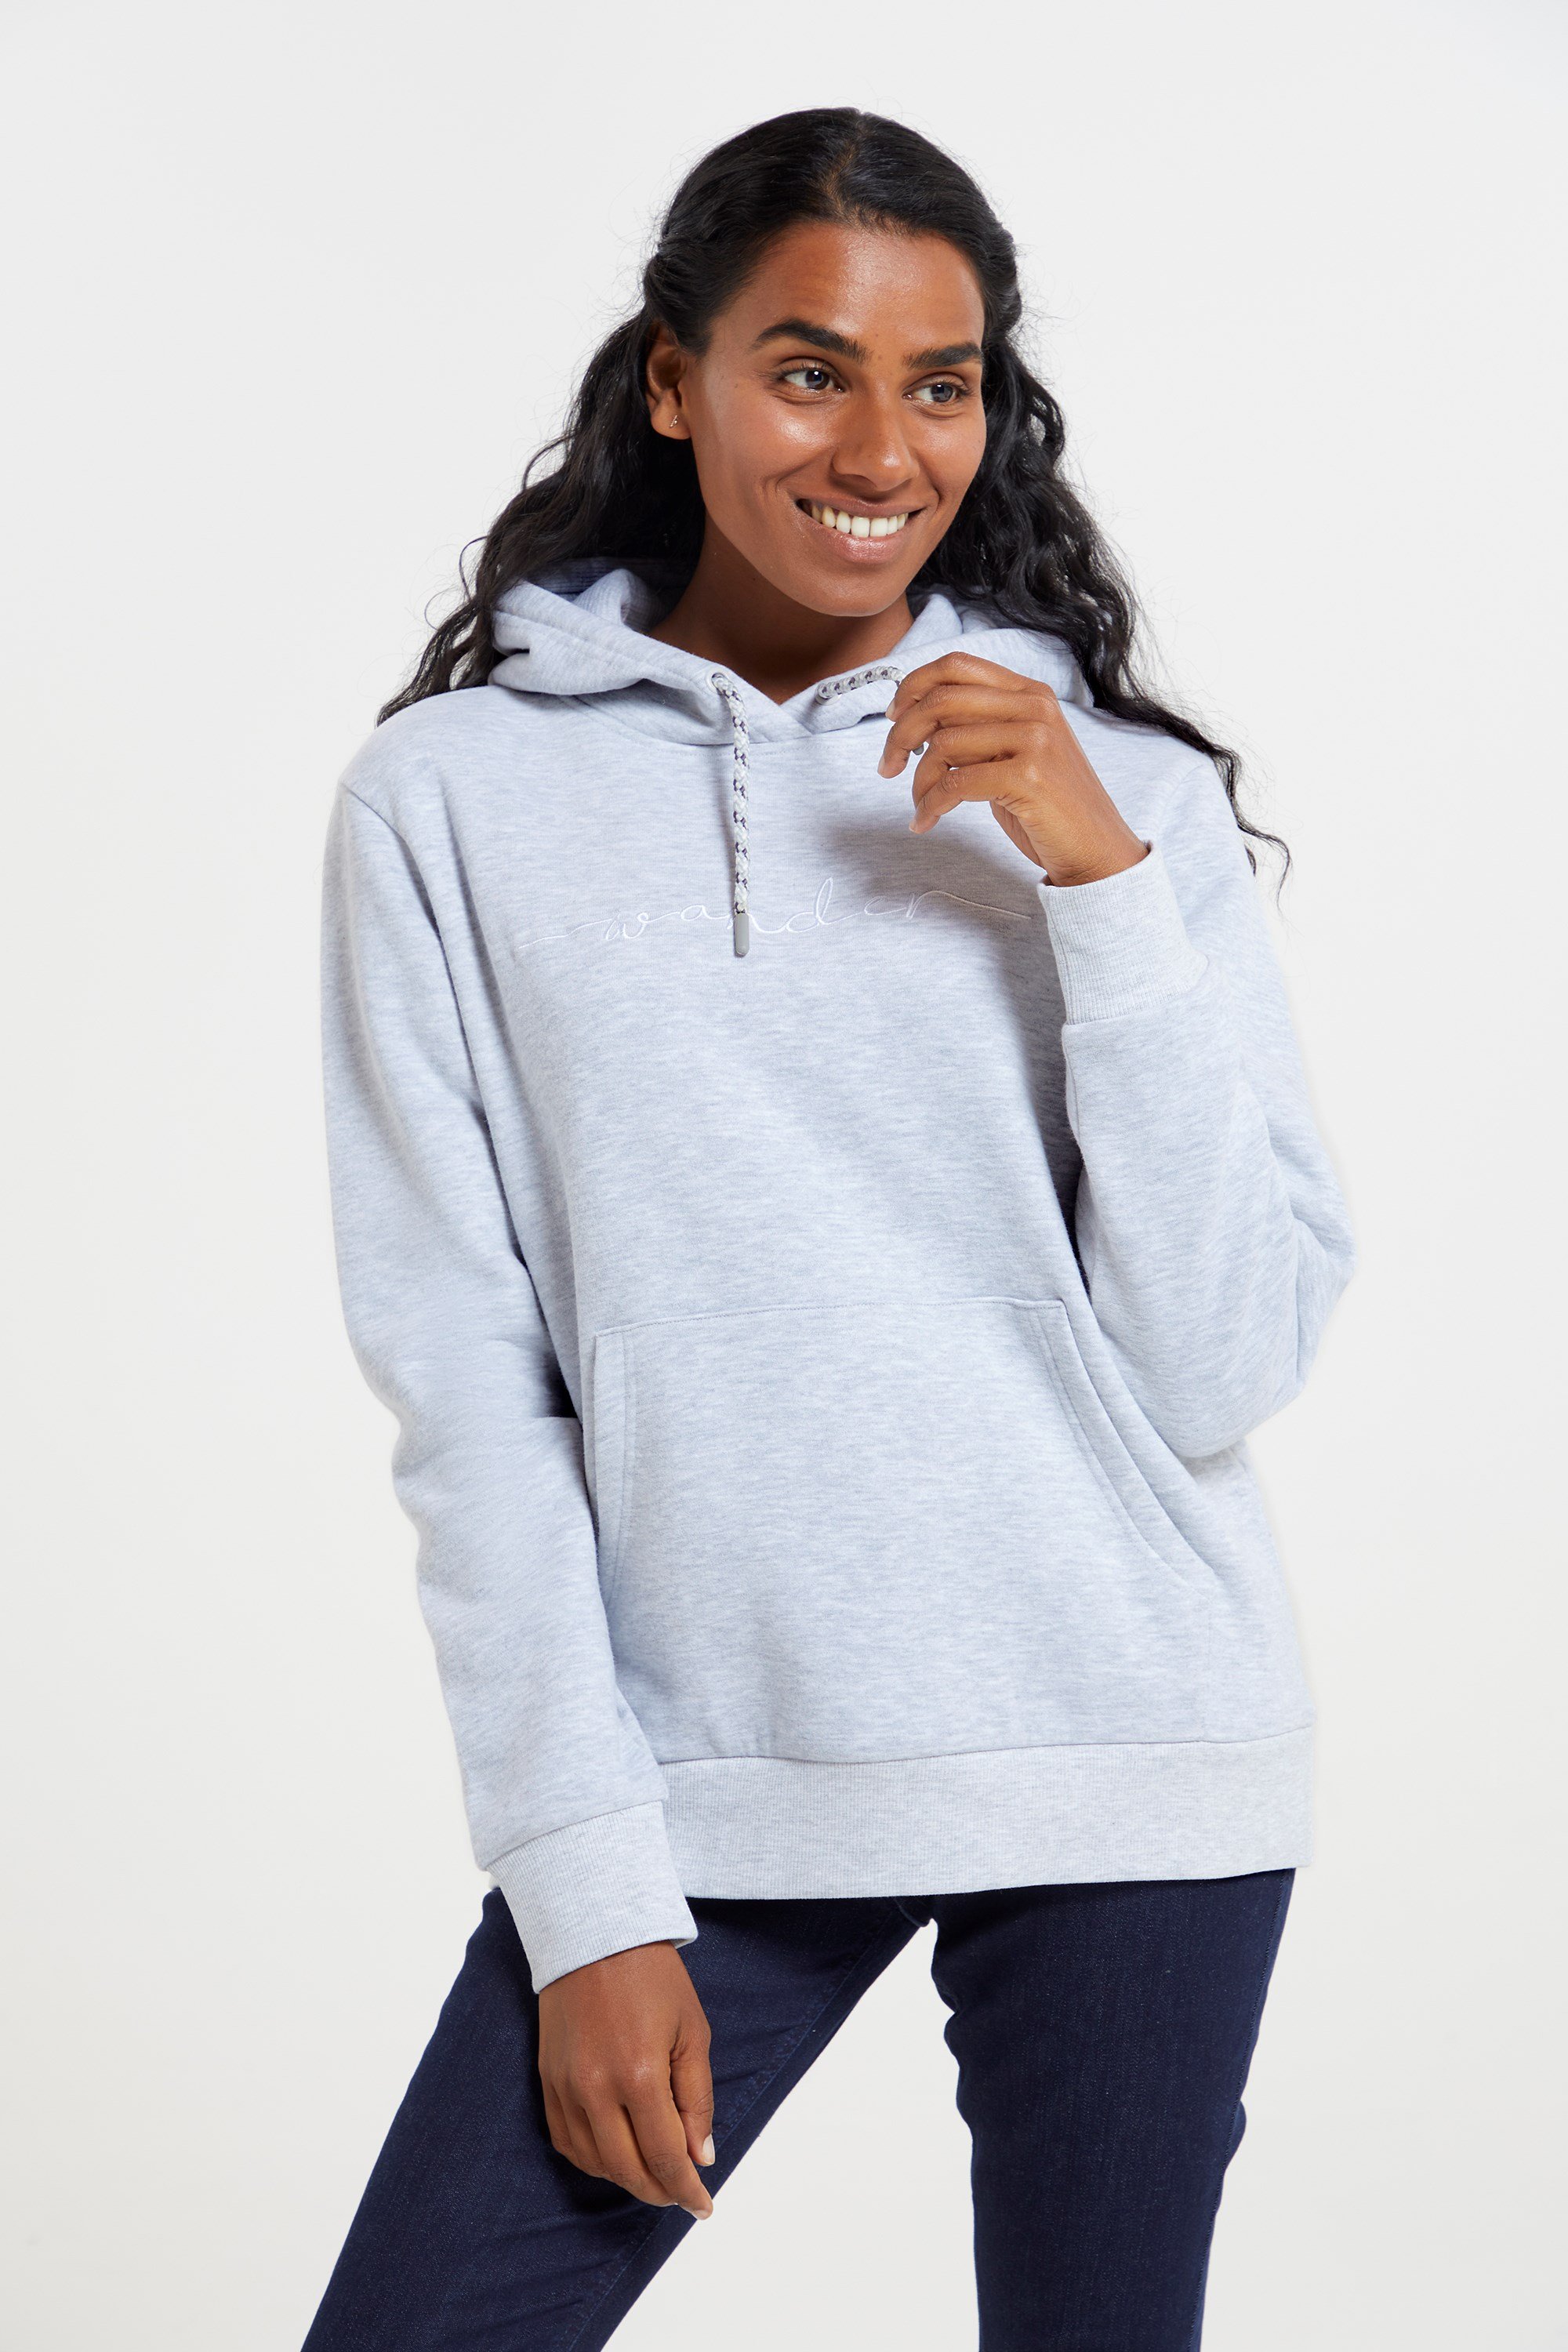 Women's Hoodies & Women's Sweatshirts